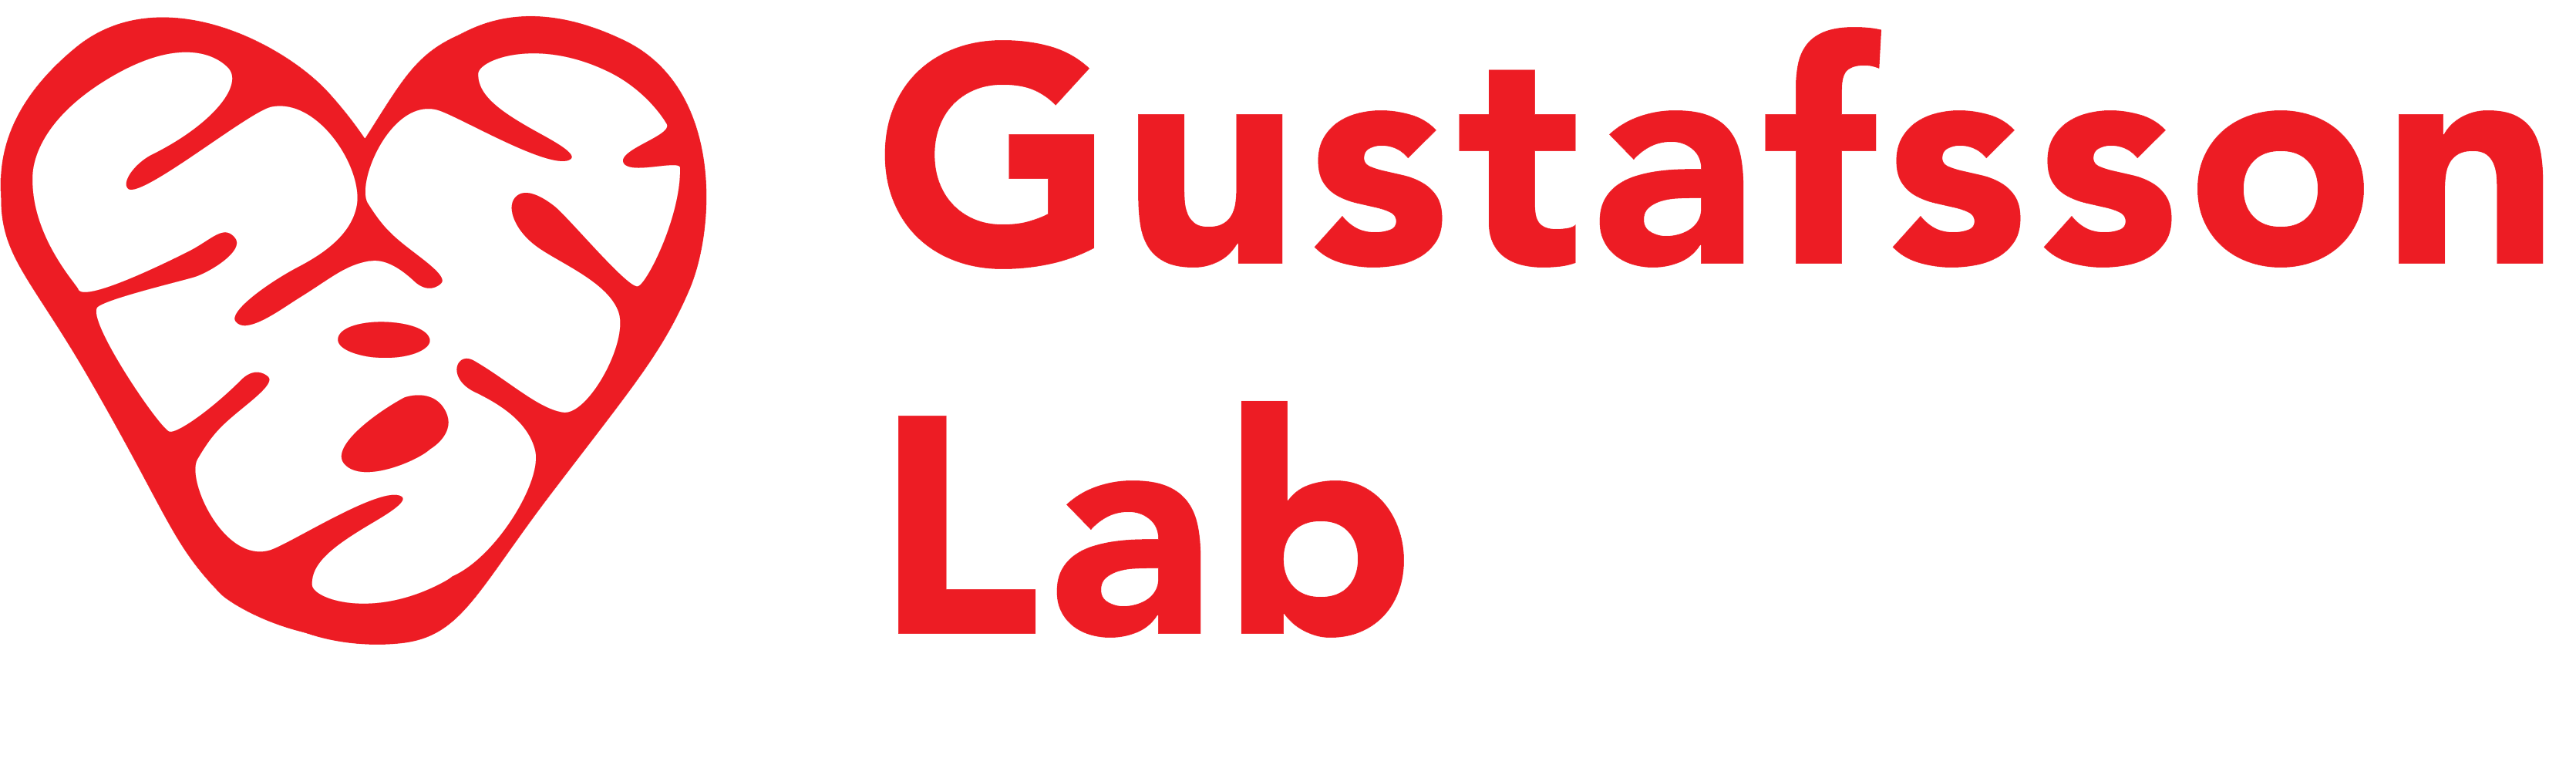 Gustafsson Lab